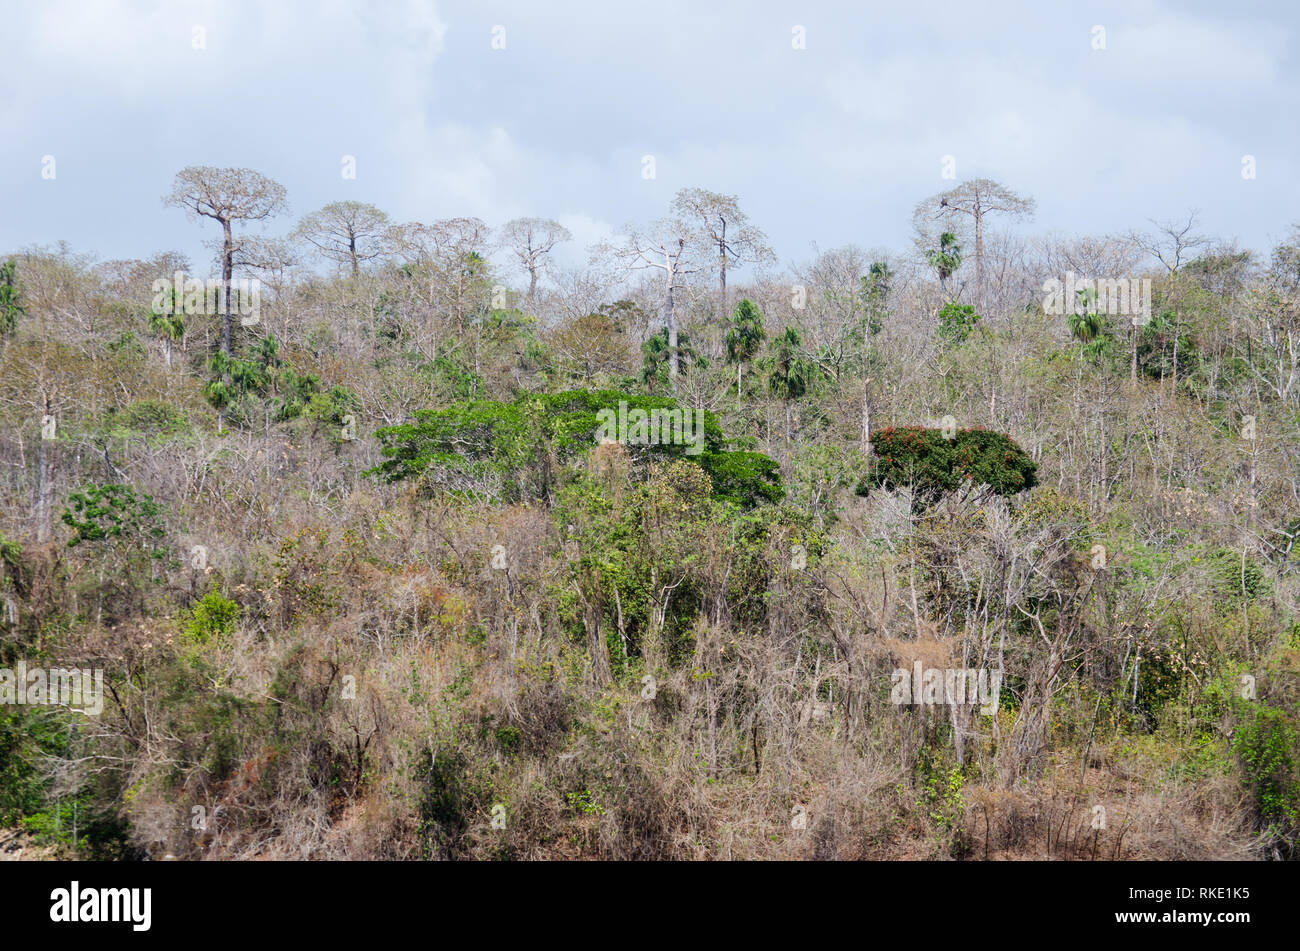 La foresta tropicale in Guna de Madugandi Affitto Prenotazione. Cavanillesia platanifolia alberi sono visibili a distanza Foto Stock